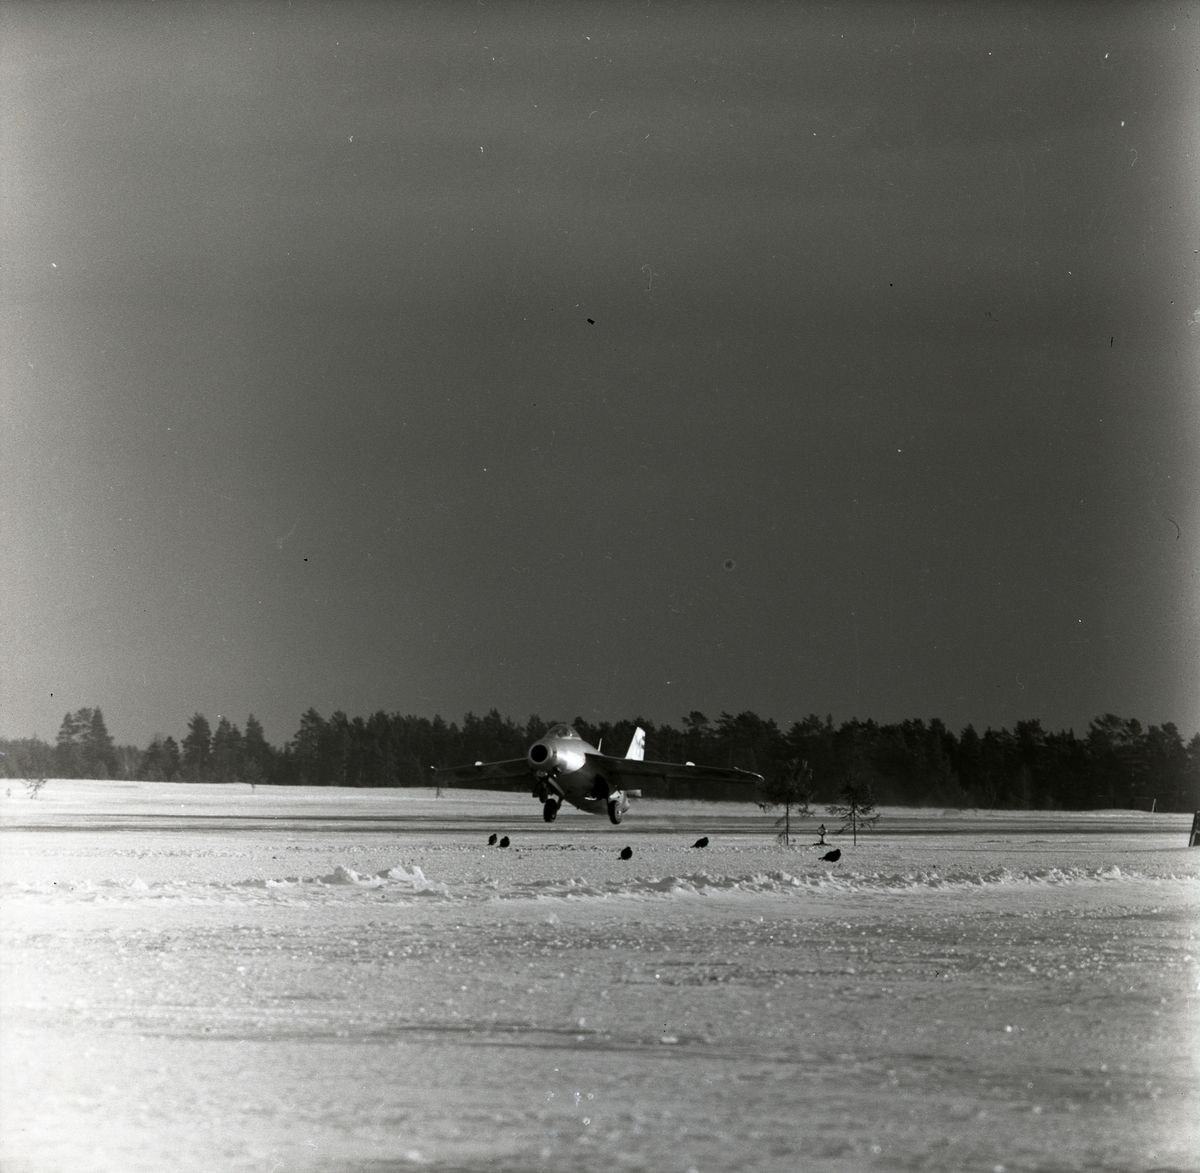 Ett startande plan av modellen J29 Tunnan i Söderhamn den 16 januari 1957. På marken finns några orrar.